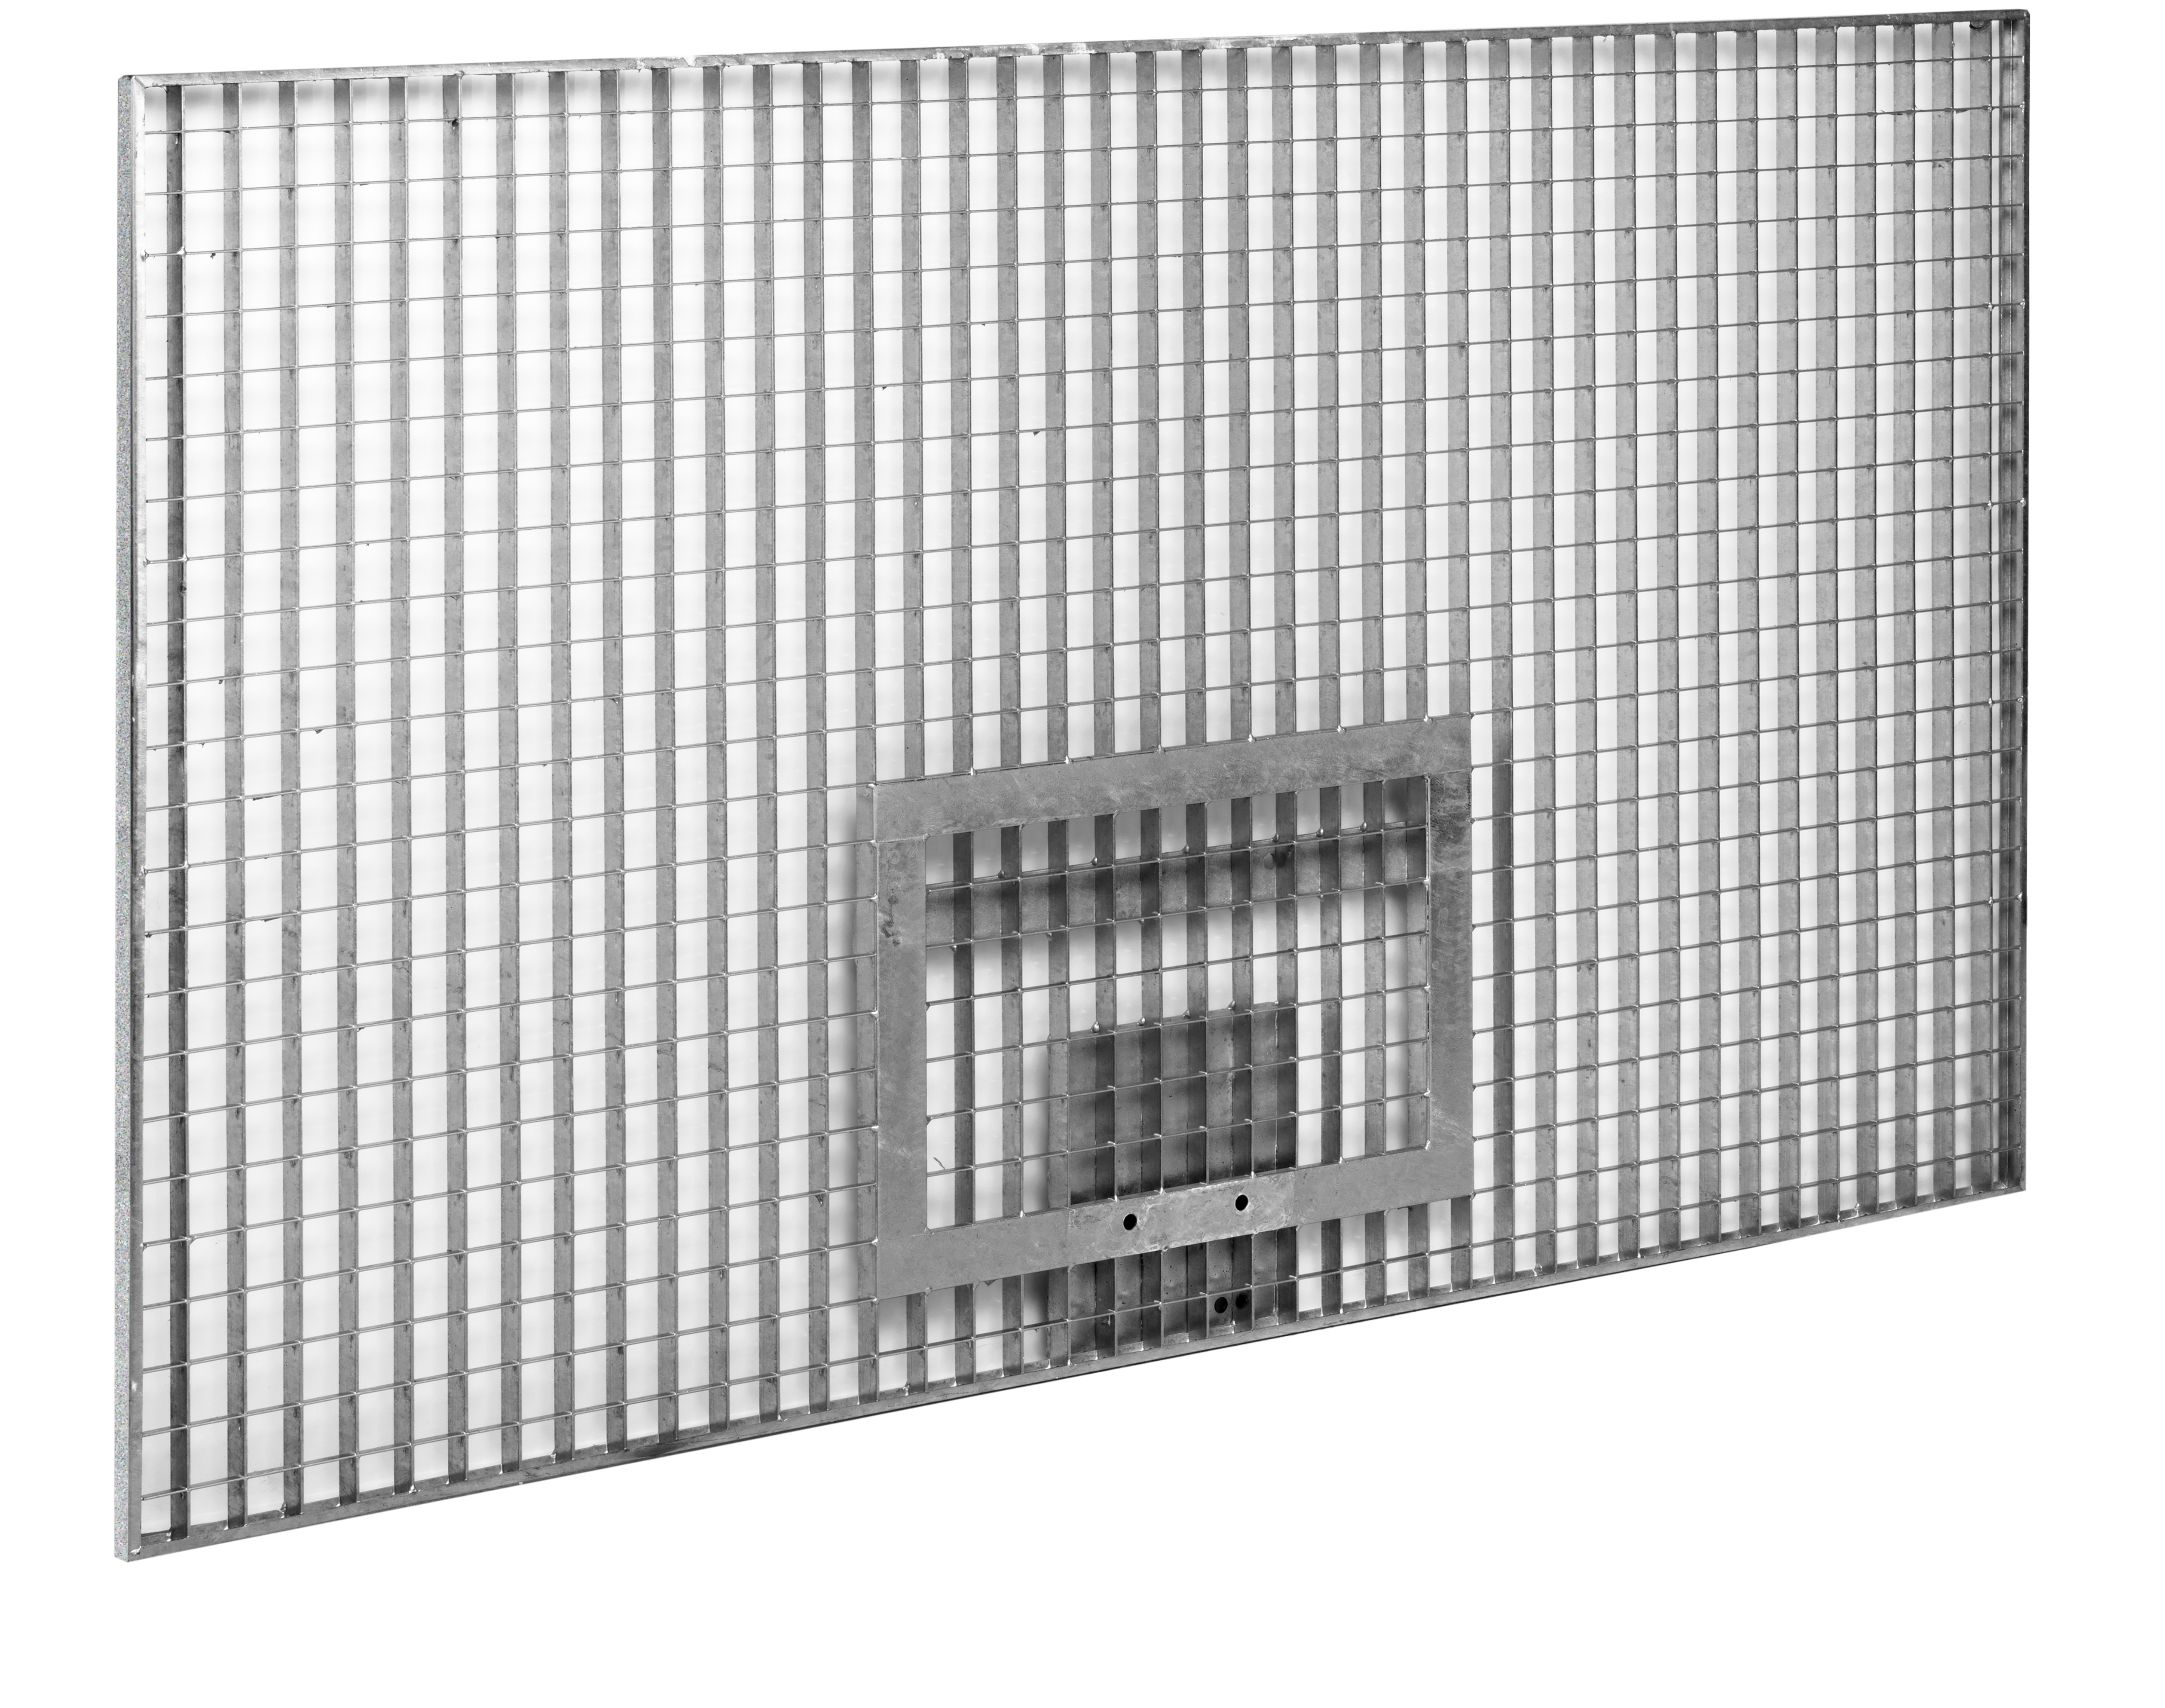 Streetball grid board 180 x 105 cm